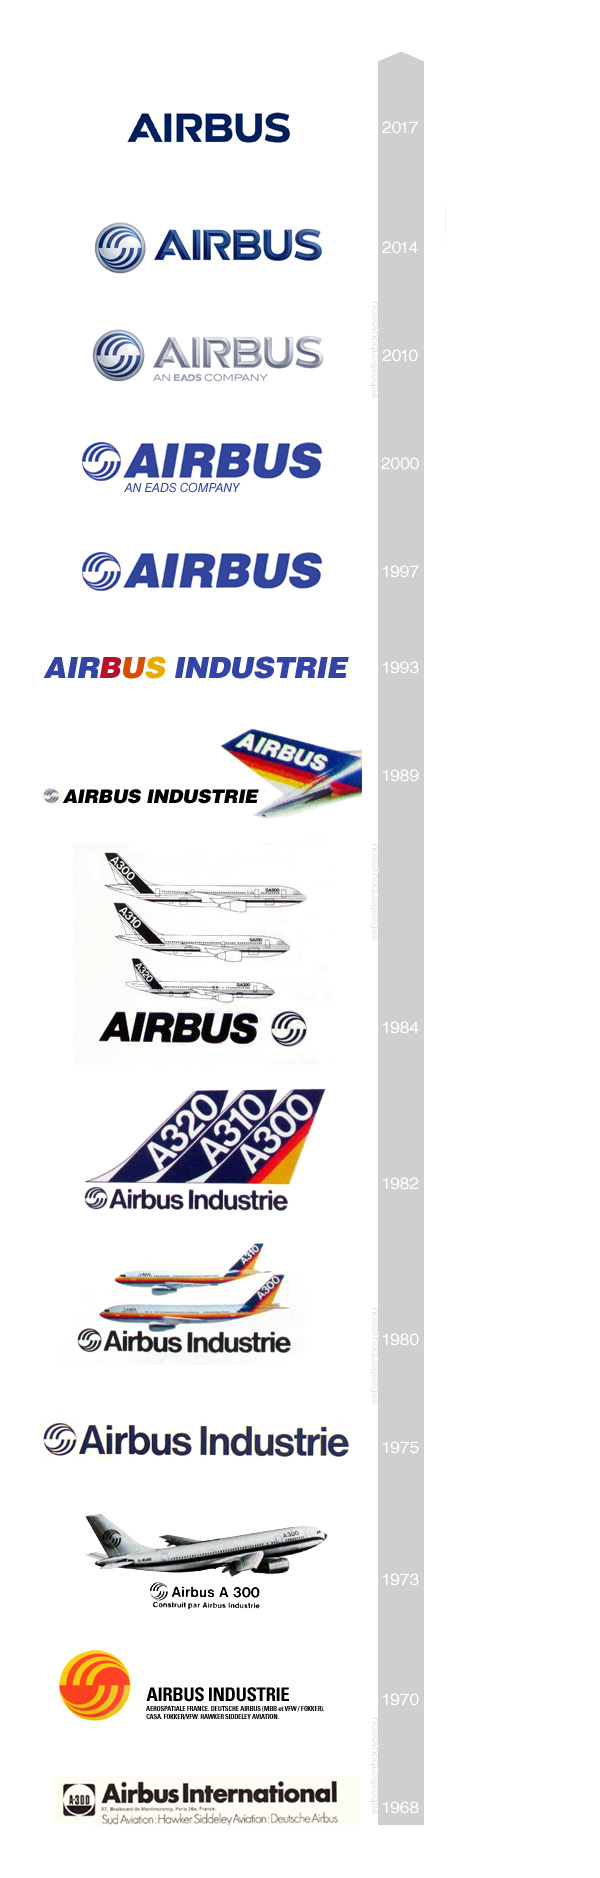 Historique des Logos de 1968 à 2017 Airbus, Airbus Industrie